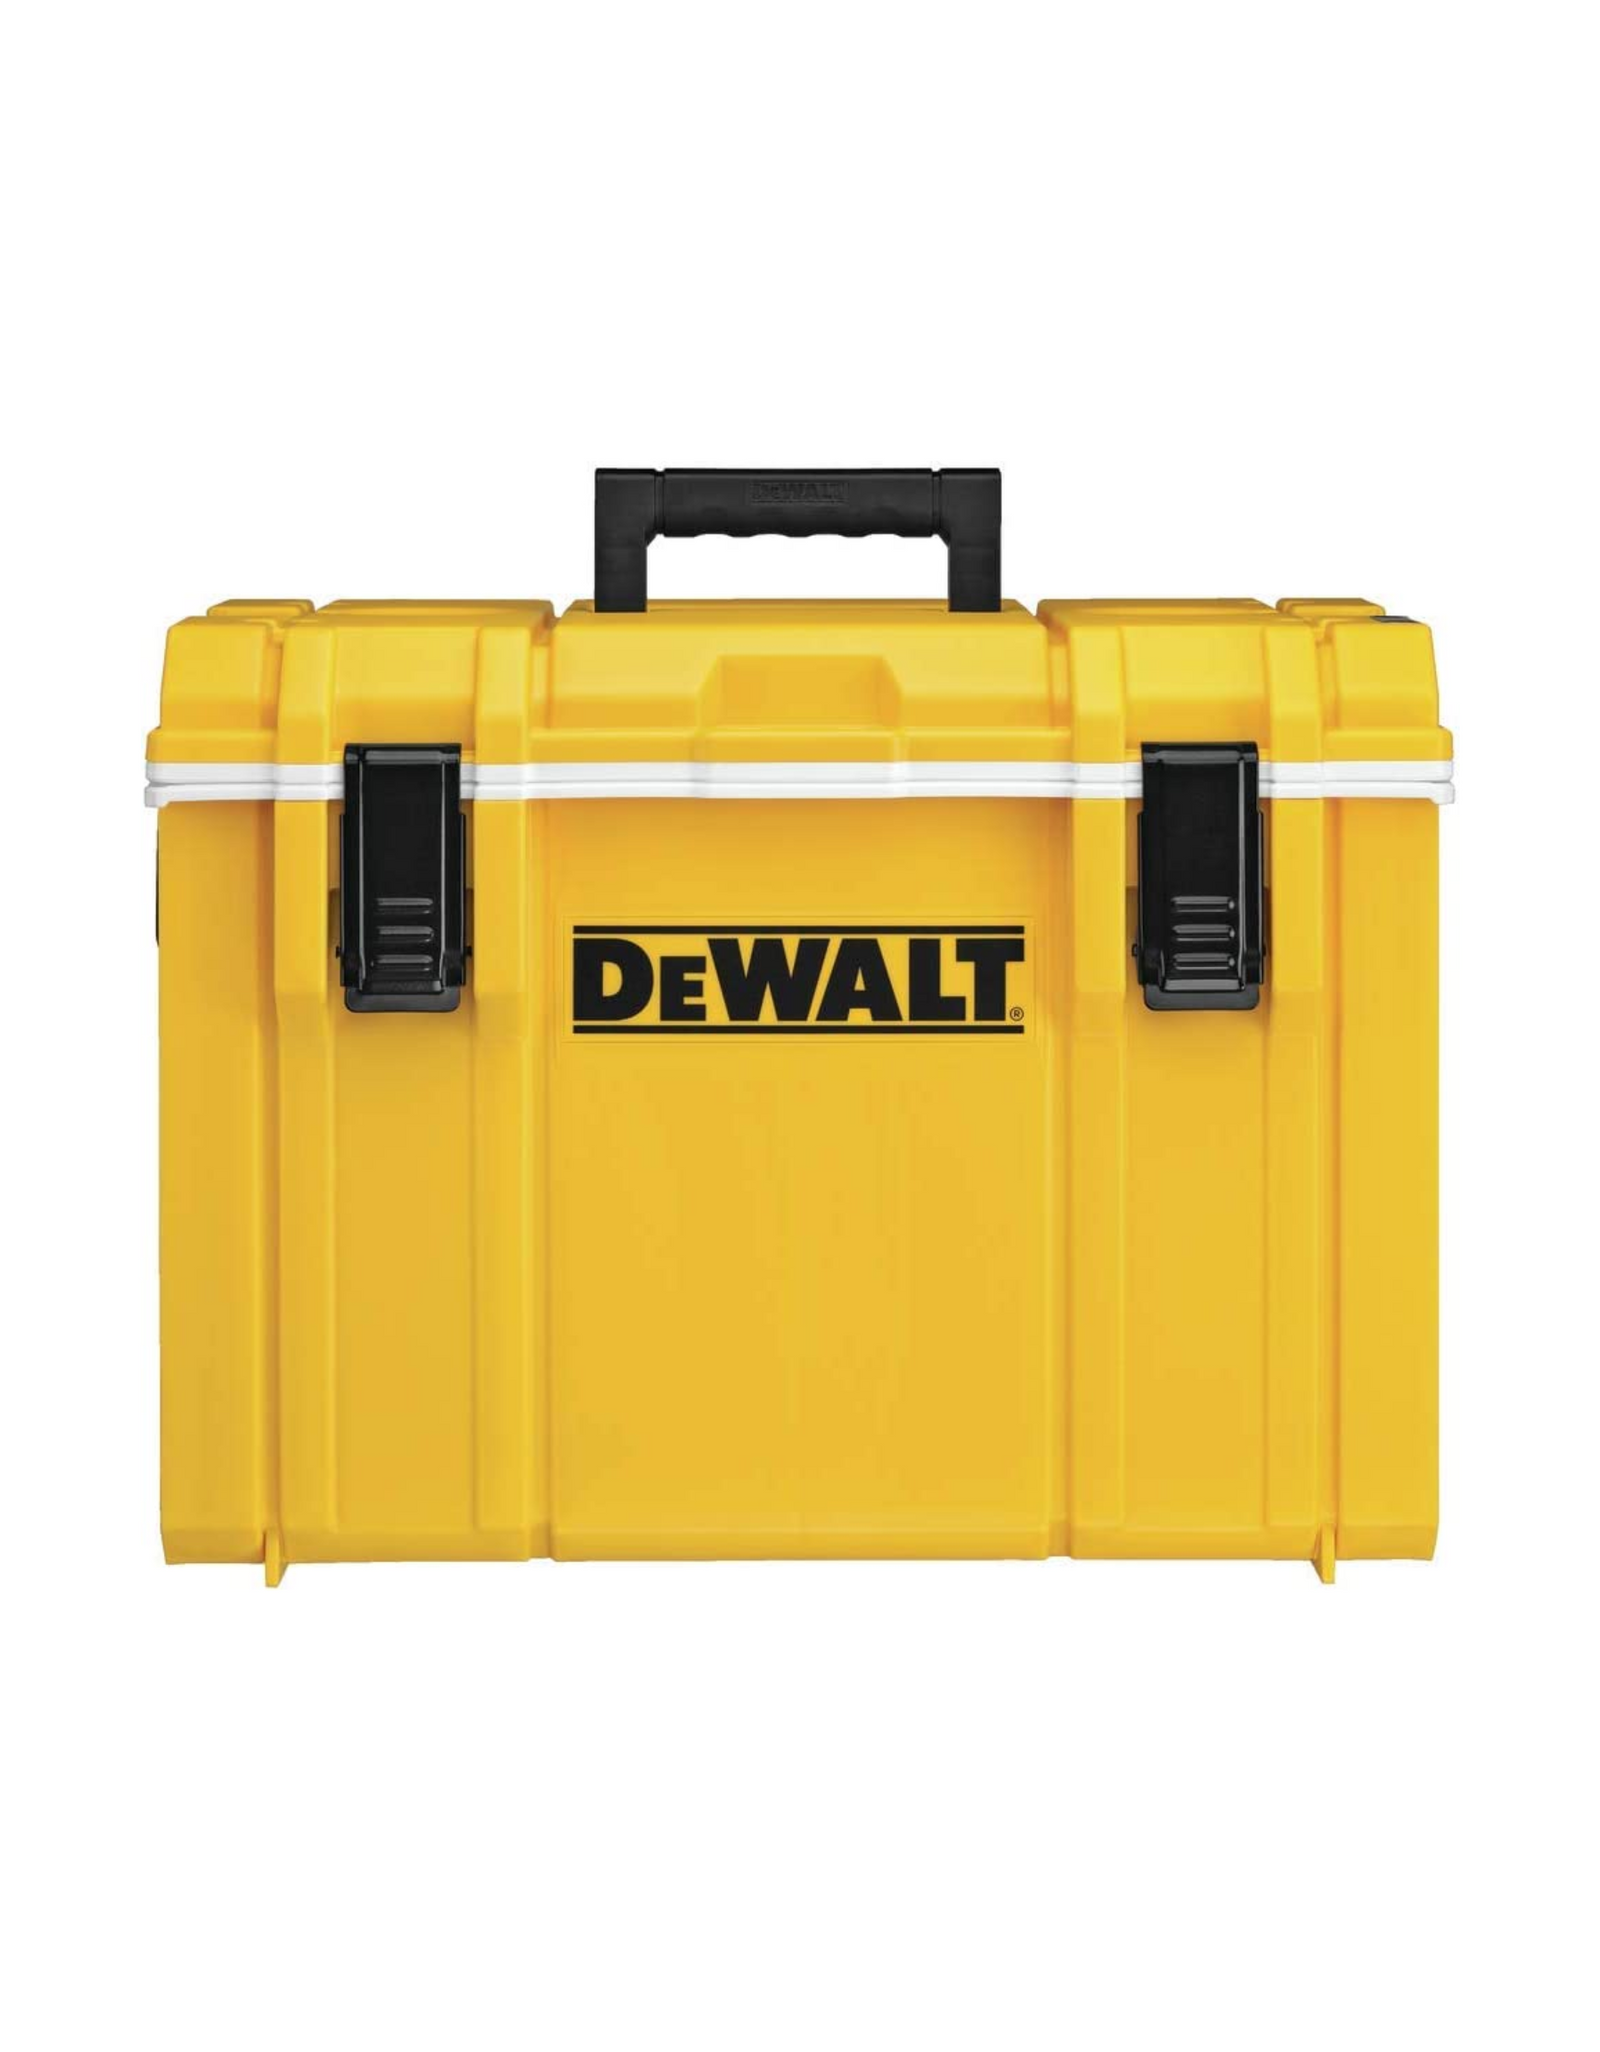 DEWALT TOUGHSYSTEM Small Cooler (DWST08404), 27-Qt, Yellow